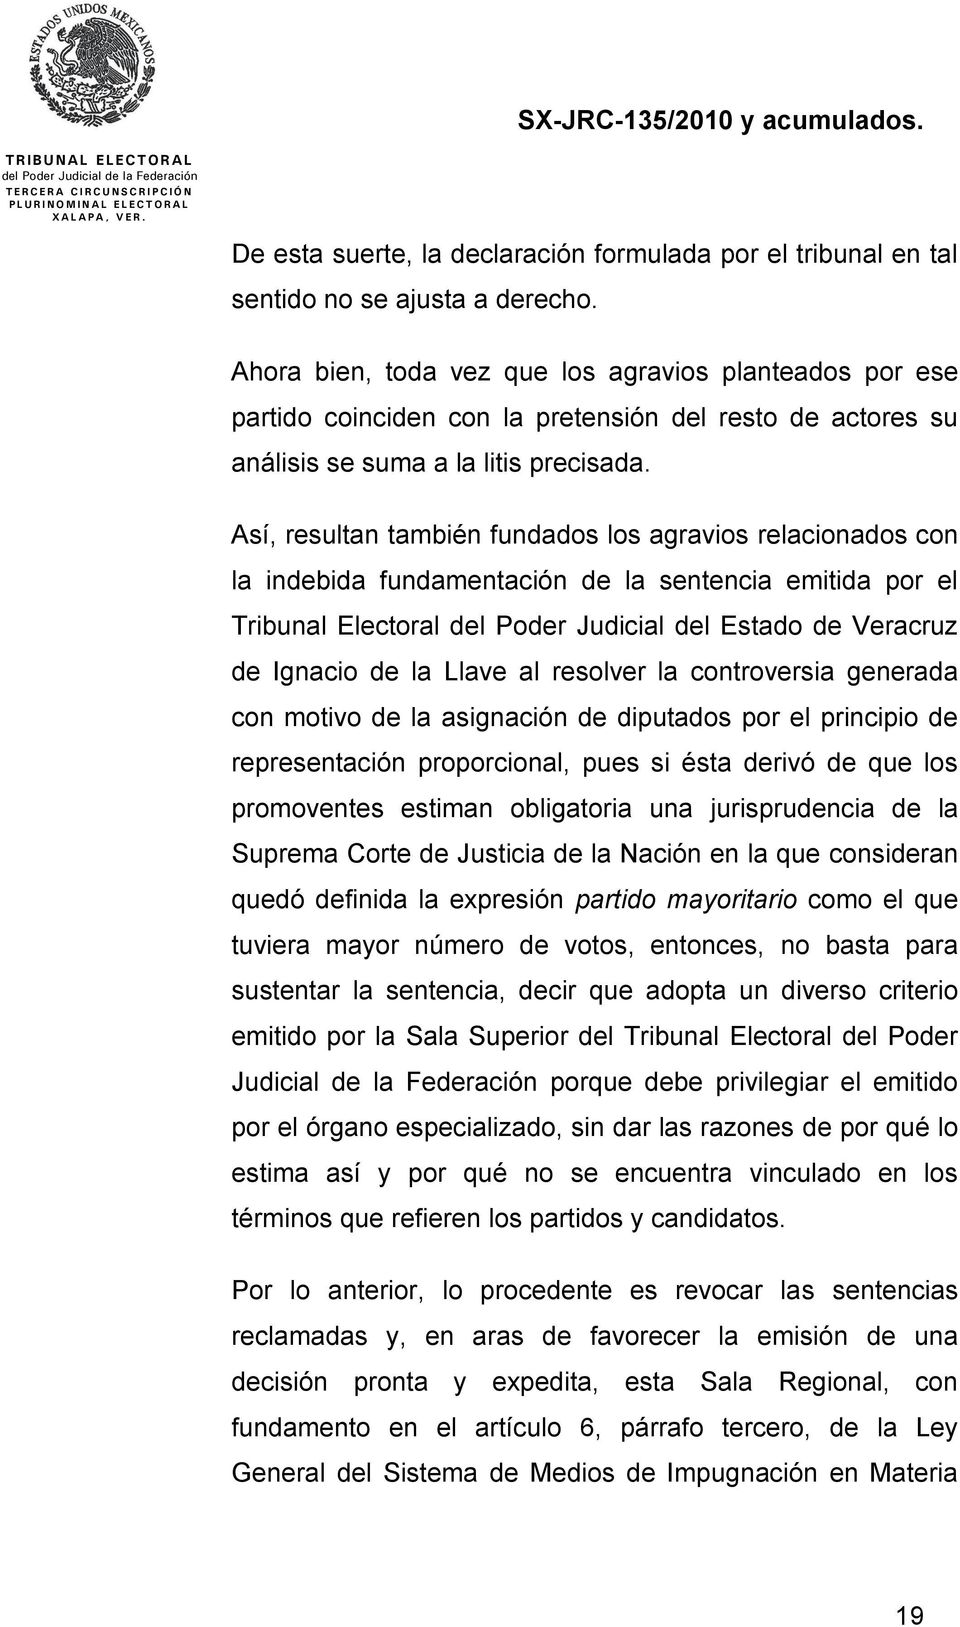 Así, resultan también fundados los agravios relacionados con la indebida fundamentación de la sentencia emitida por el Tribunal Electoral del Poder Judicial del Estado de Veracruz de Ignacio de la